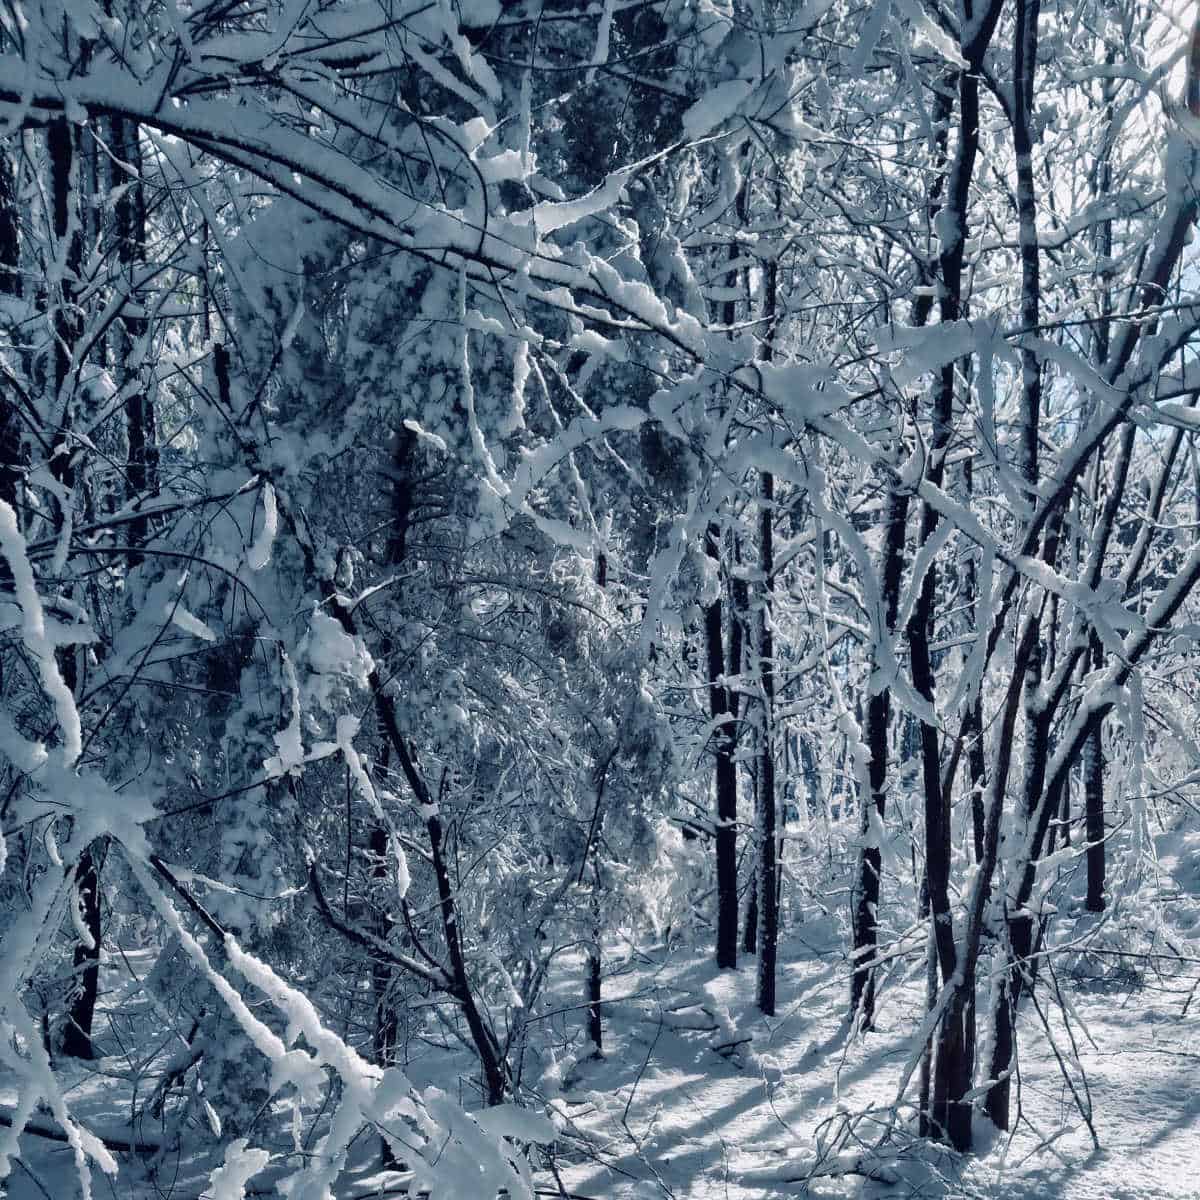 snow on trees